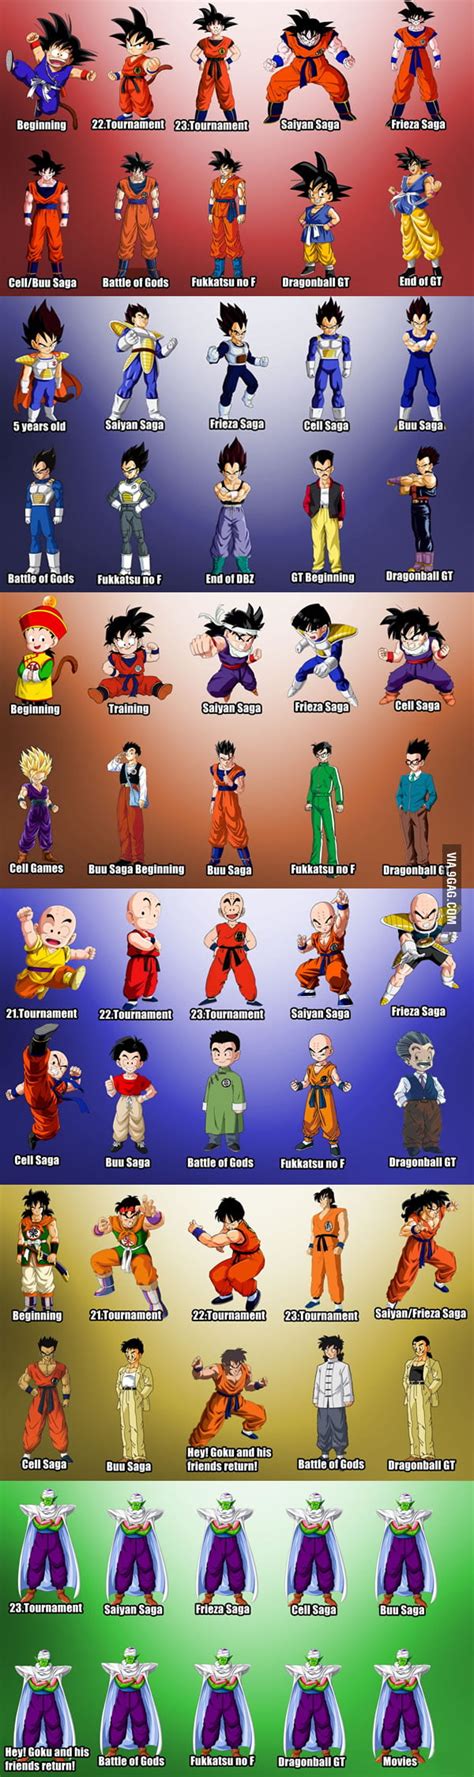 The Evolution Of Dragon Ball Characters 9gag